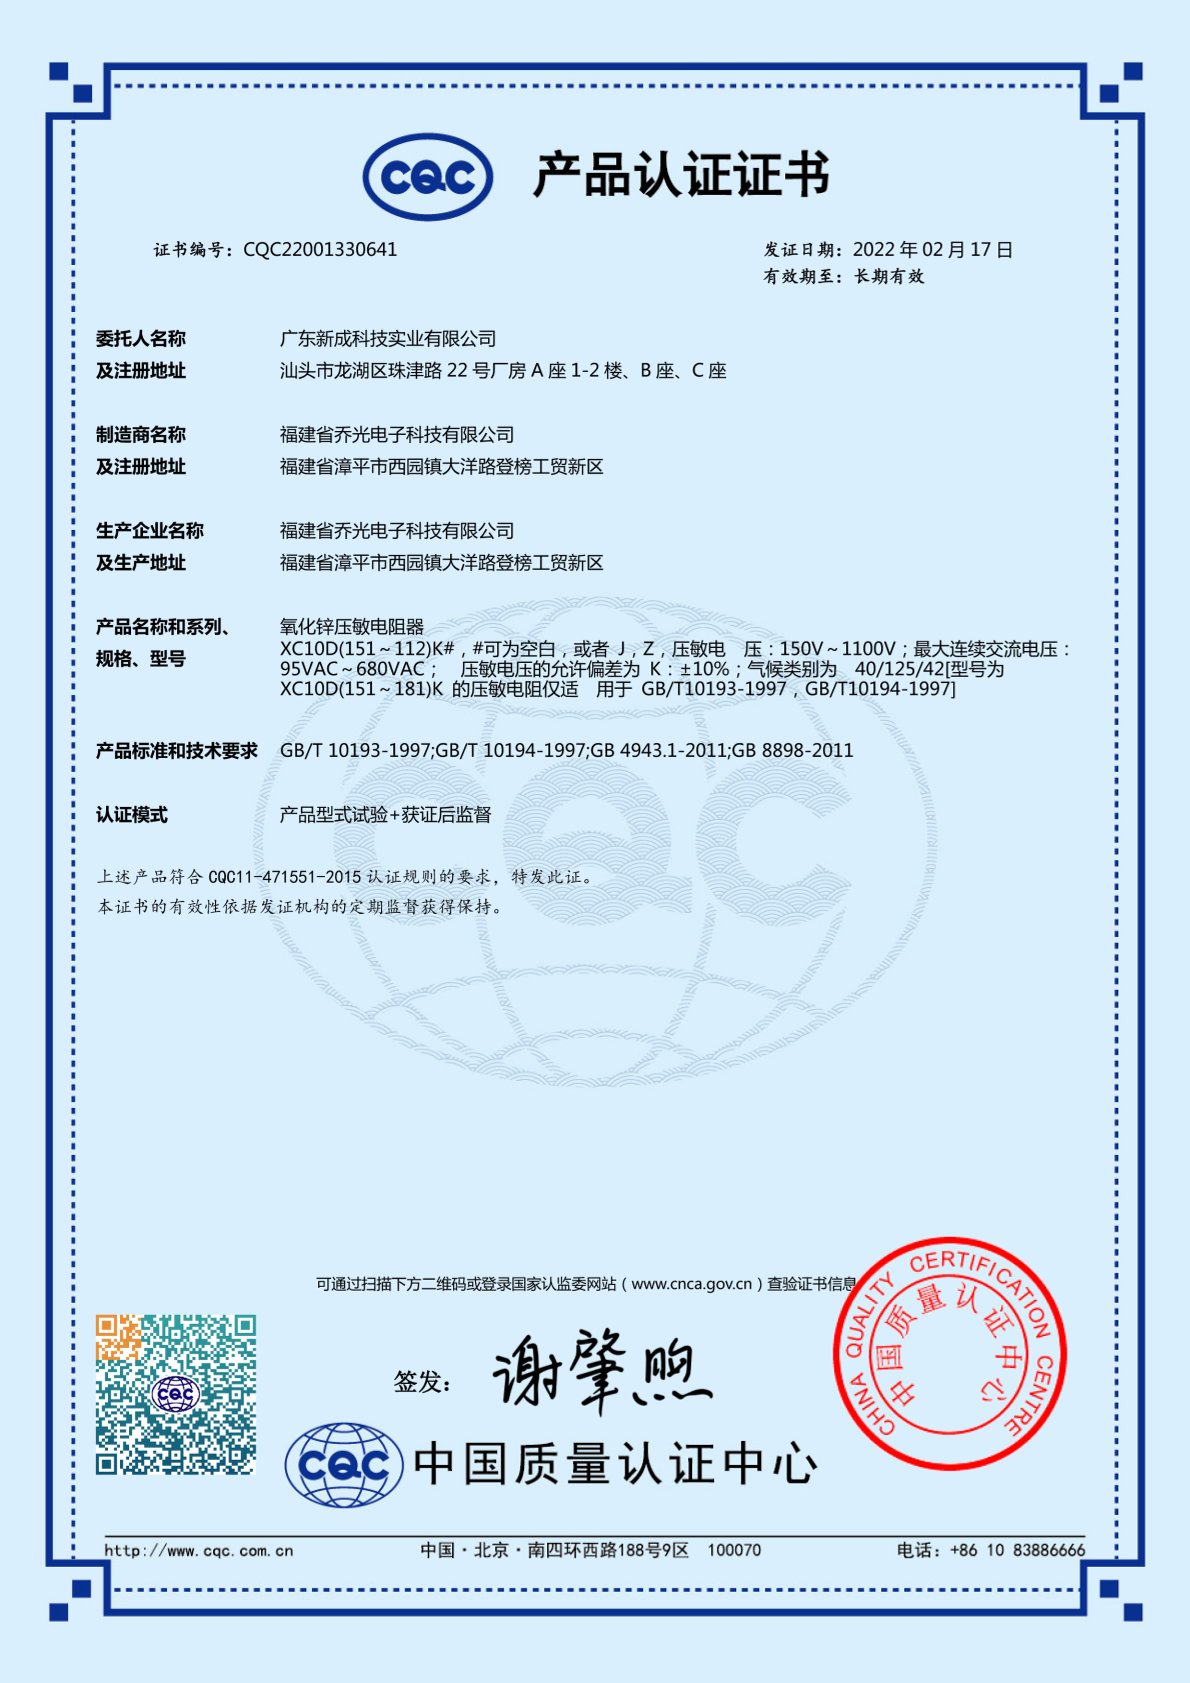  Varistor Certification 2 